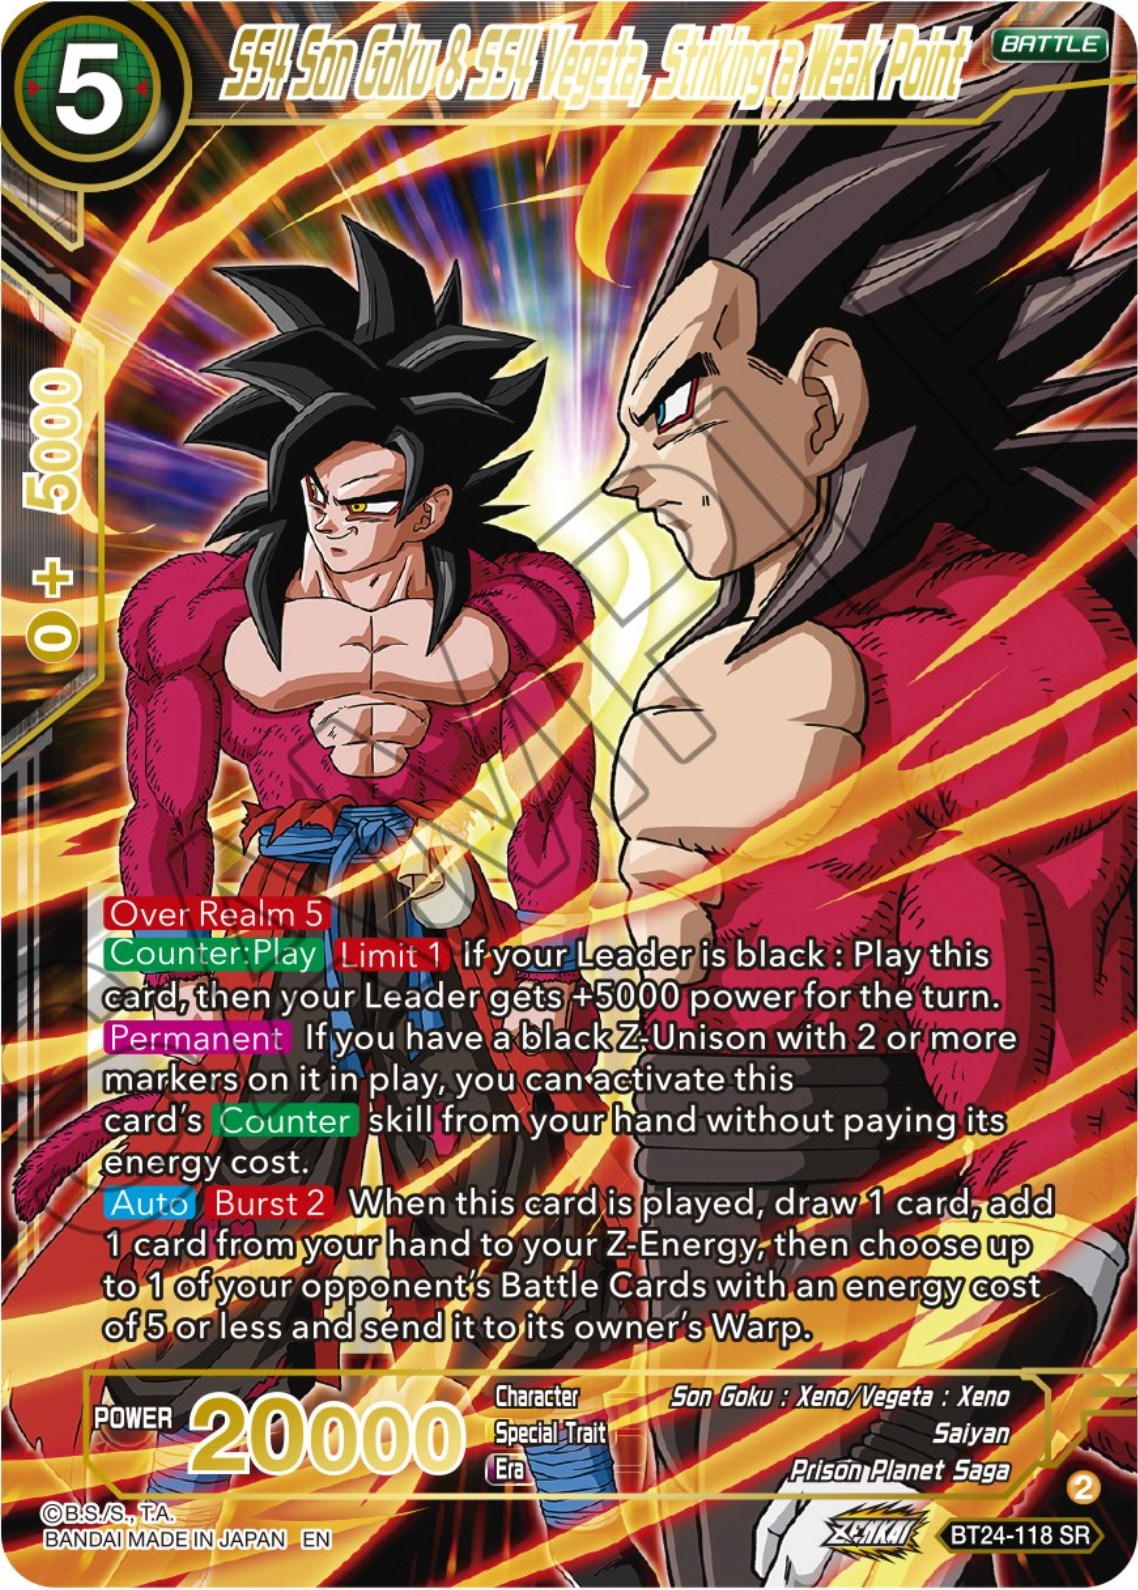 SS4 Son Goku & SS4 Vegeta, Striking a Weak Point (BT24-118) [Beyond Generations] | Event Horizon Hobbies CA